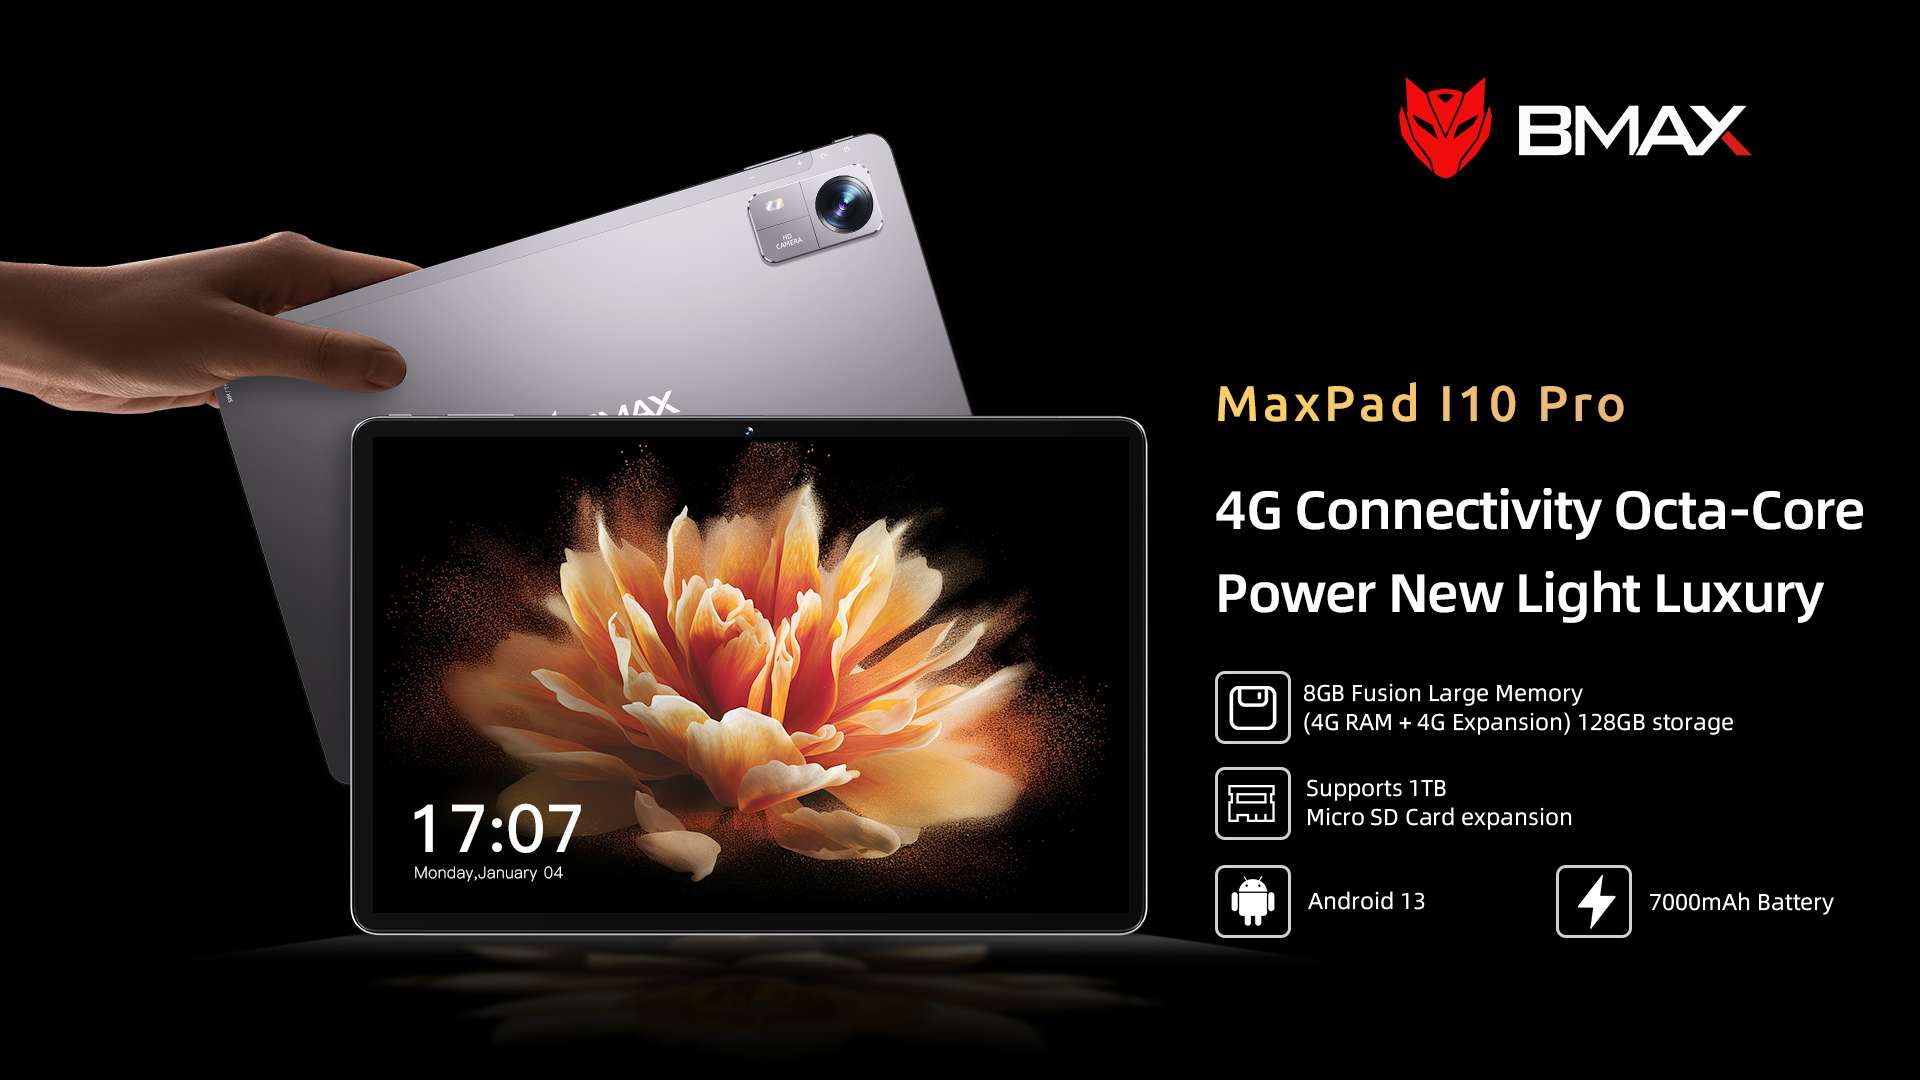 MaxPad I10 Pro - Buy MaxPad I10 Pro Product on BMAX